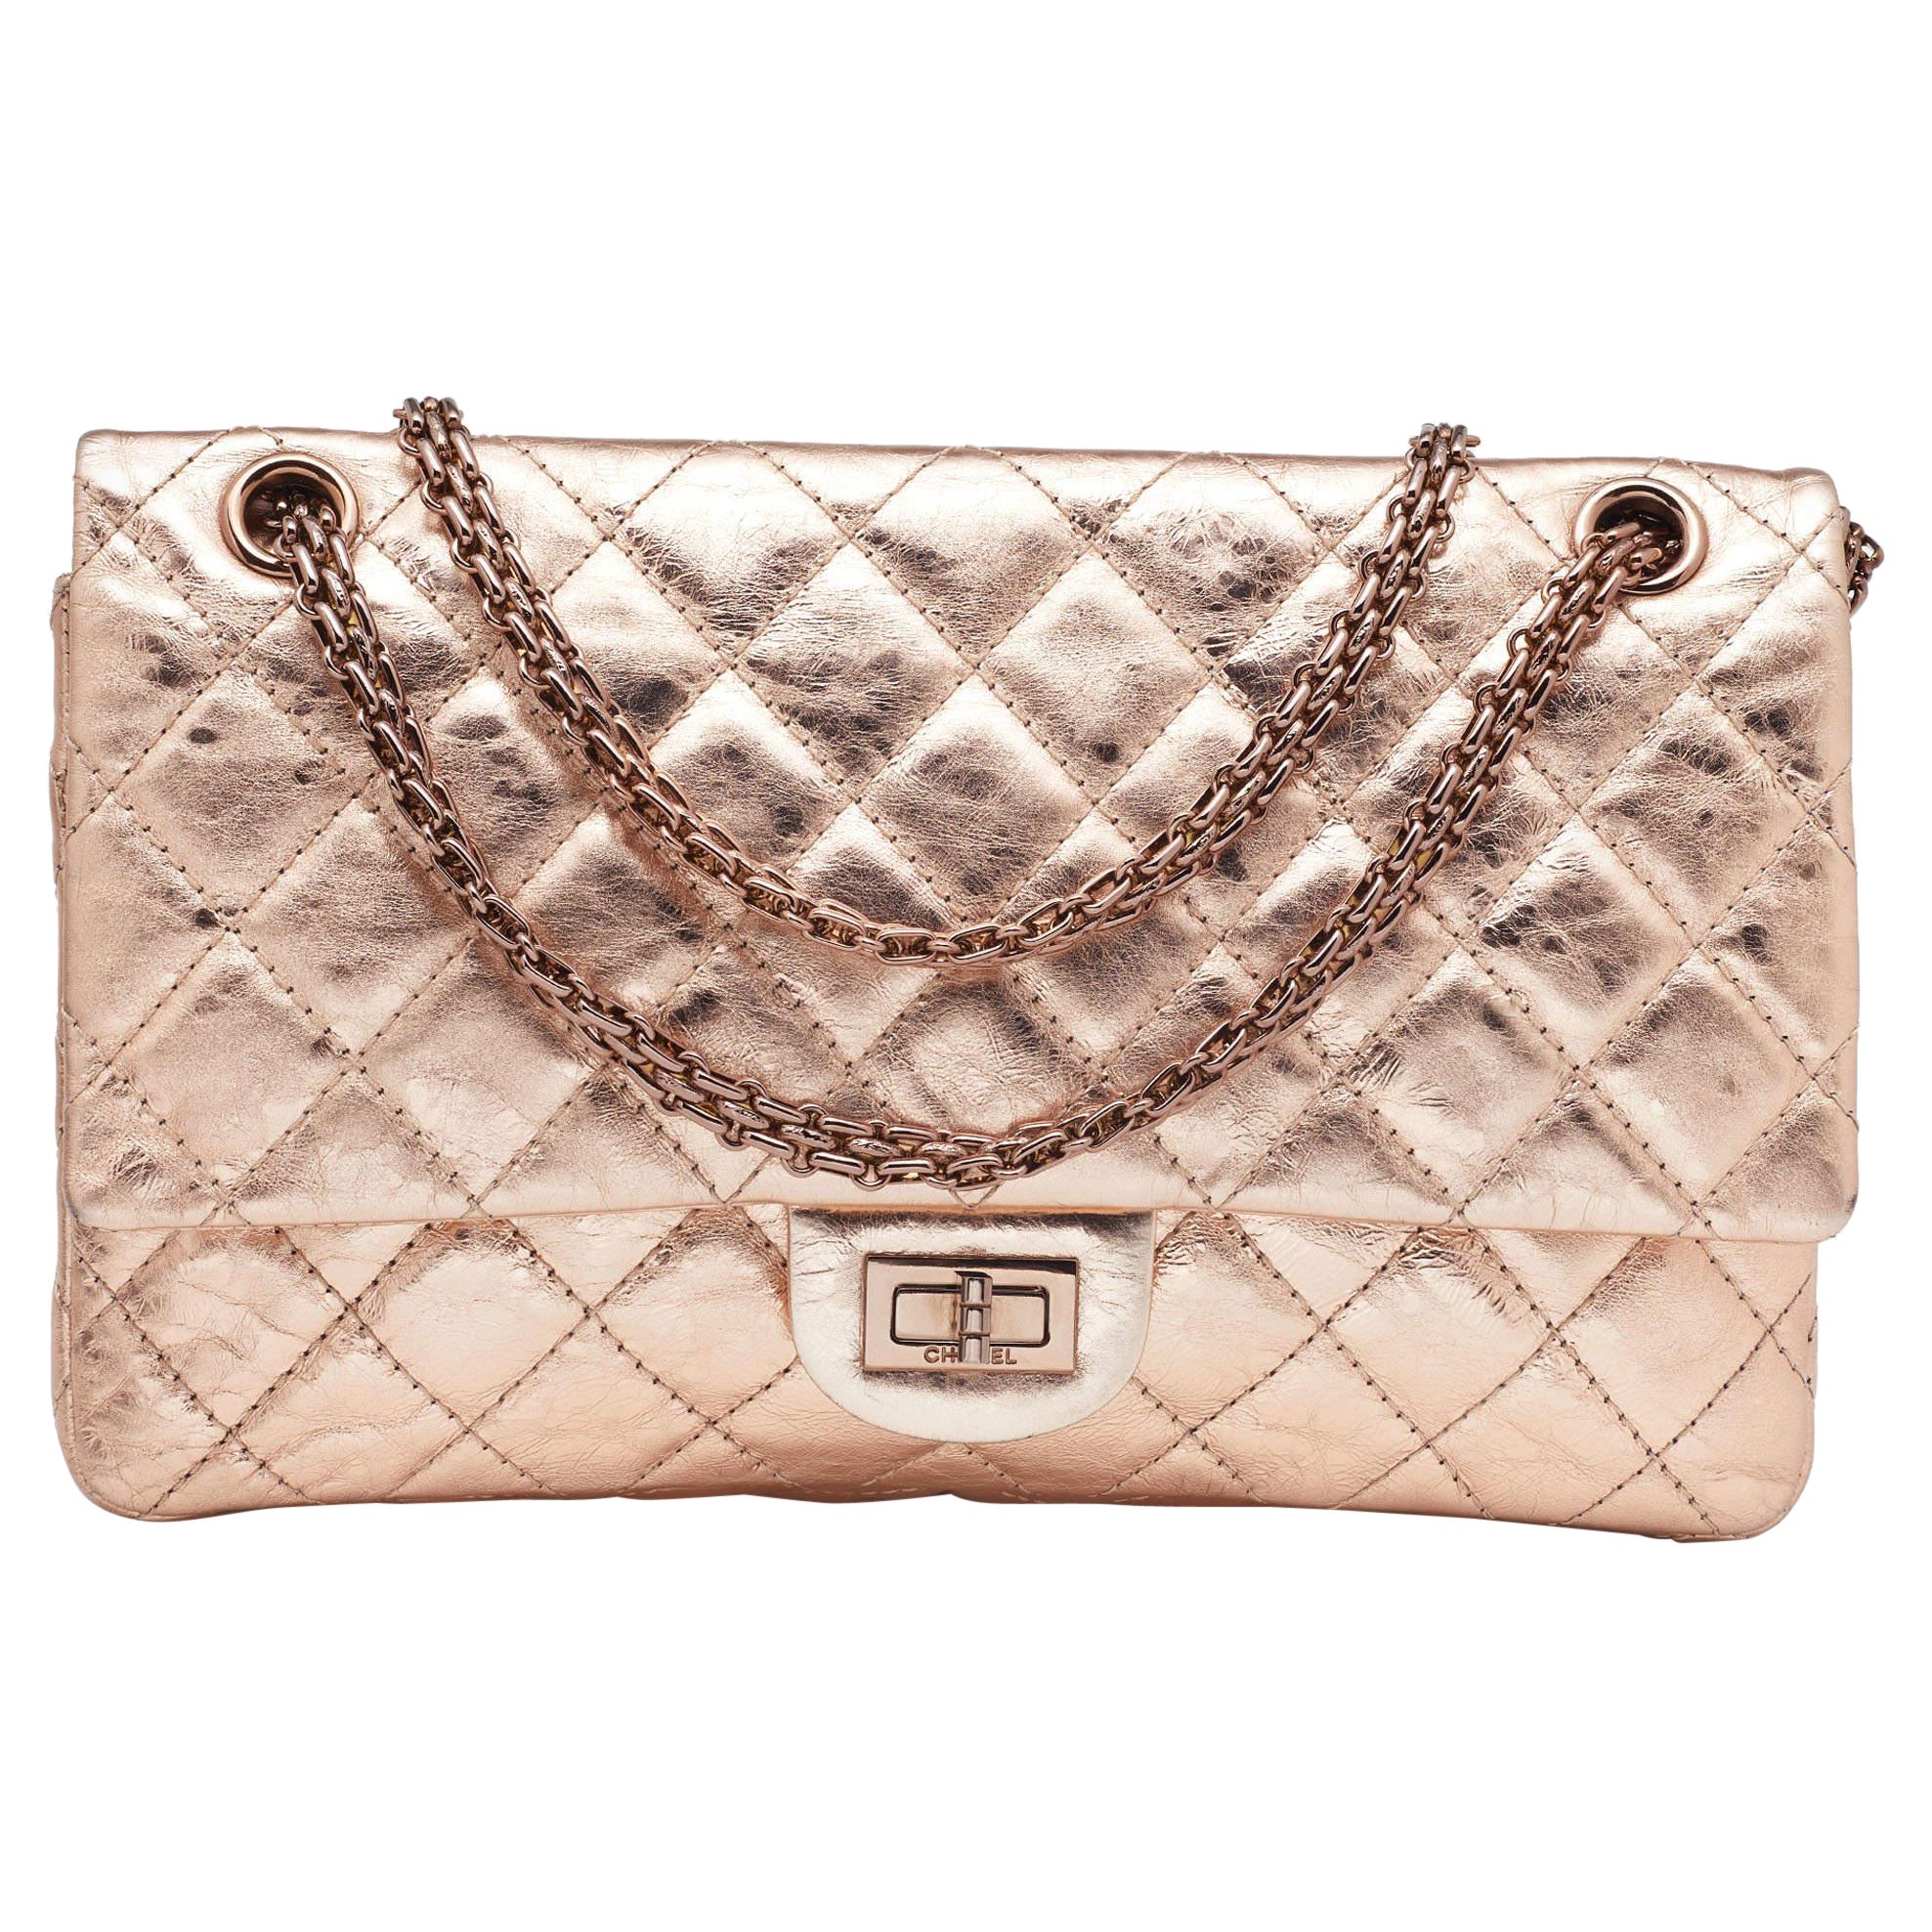 Chanel Rose Gold Bag - 11 For Sale on 1stDibs